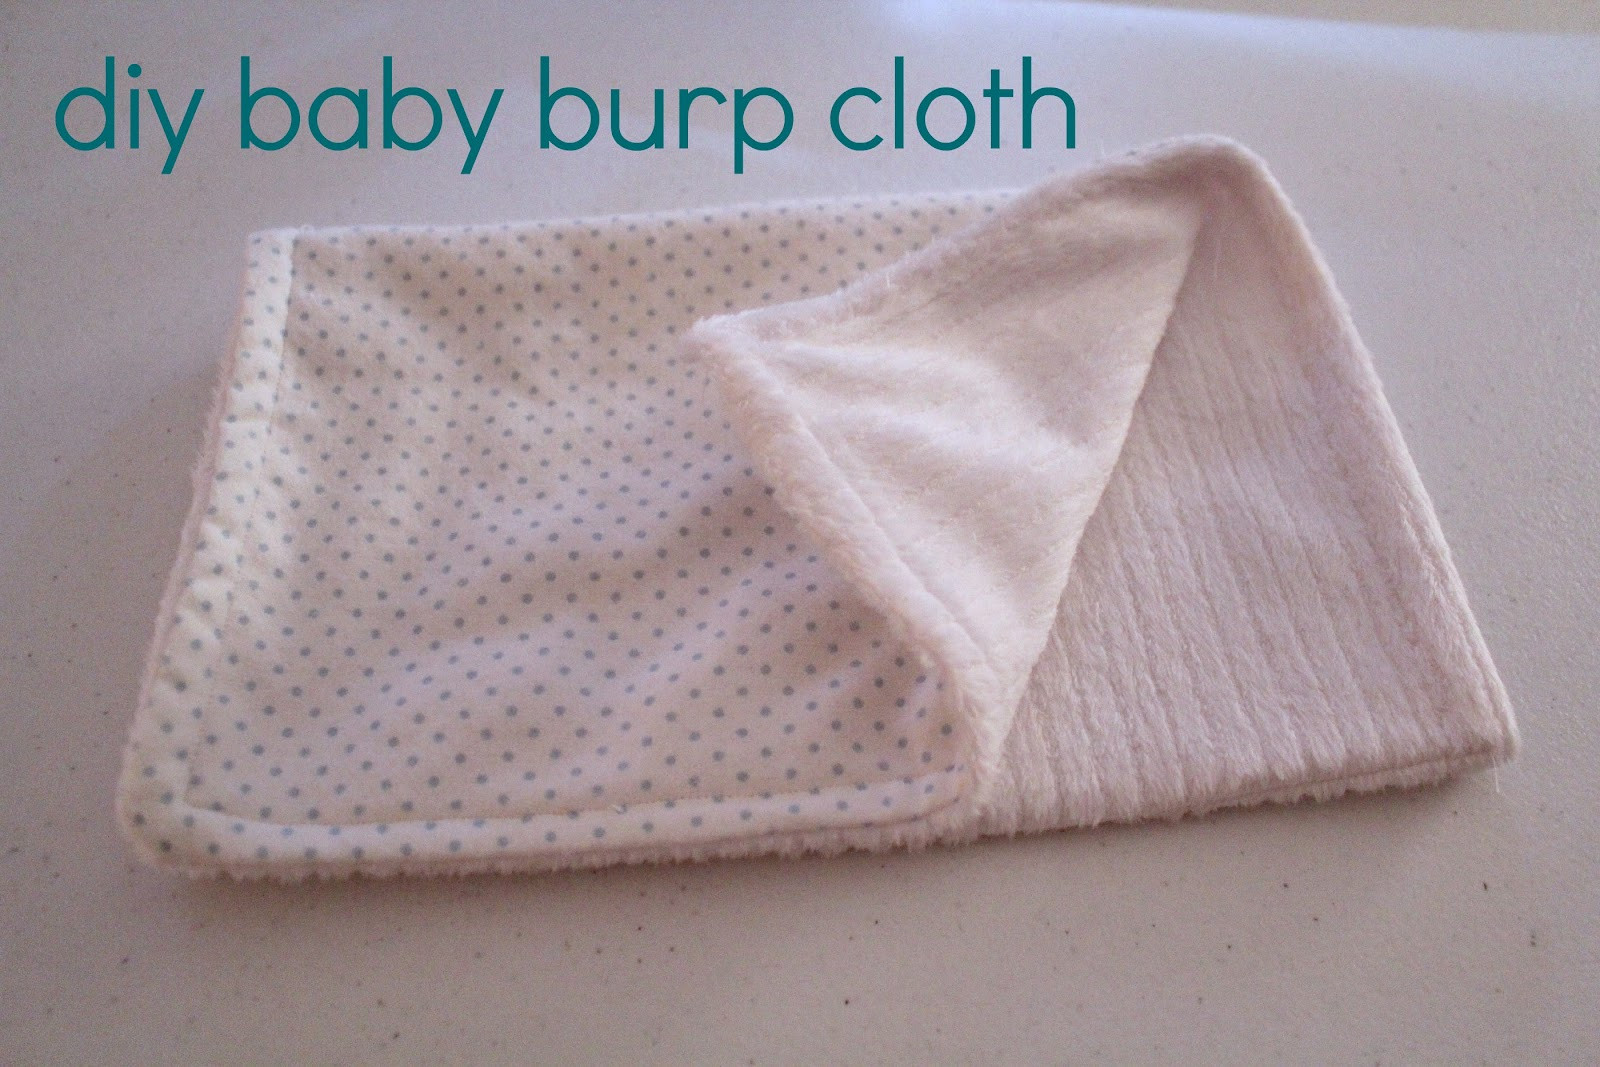 Baby Burp Cloths DIY
 Ten June DIY Baby Burp Cloth